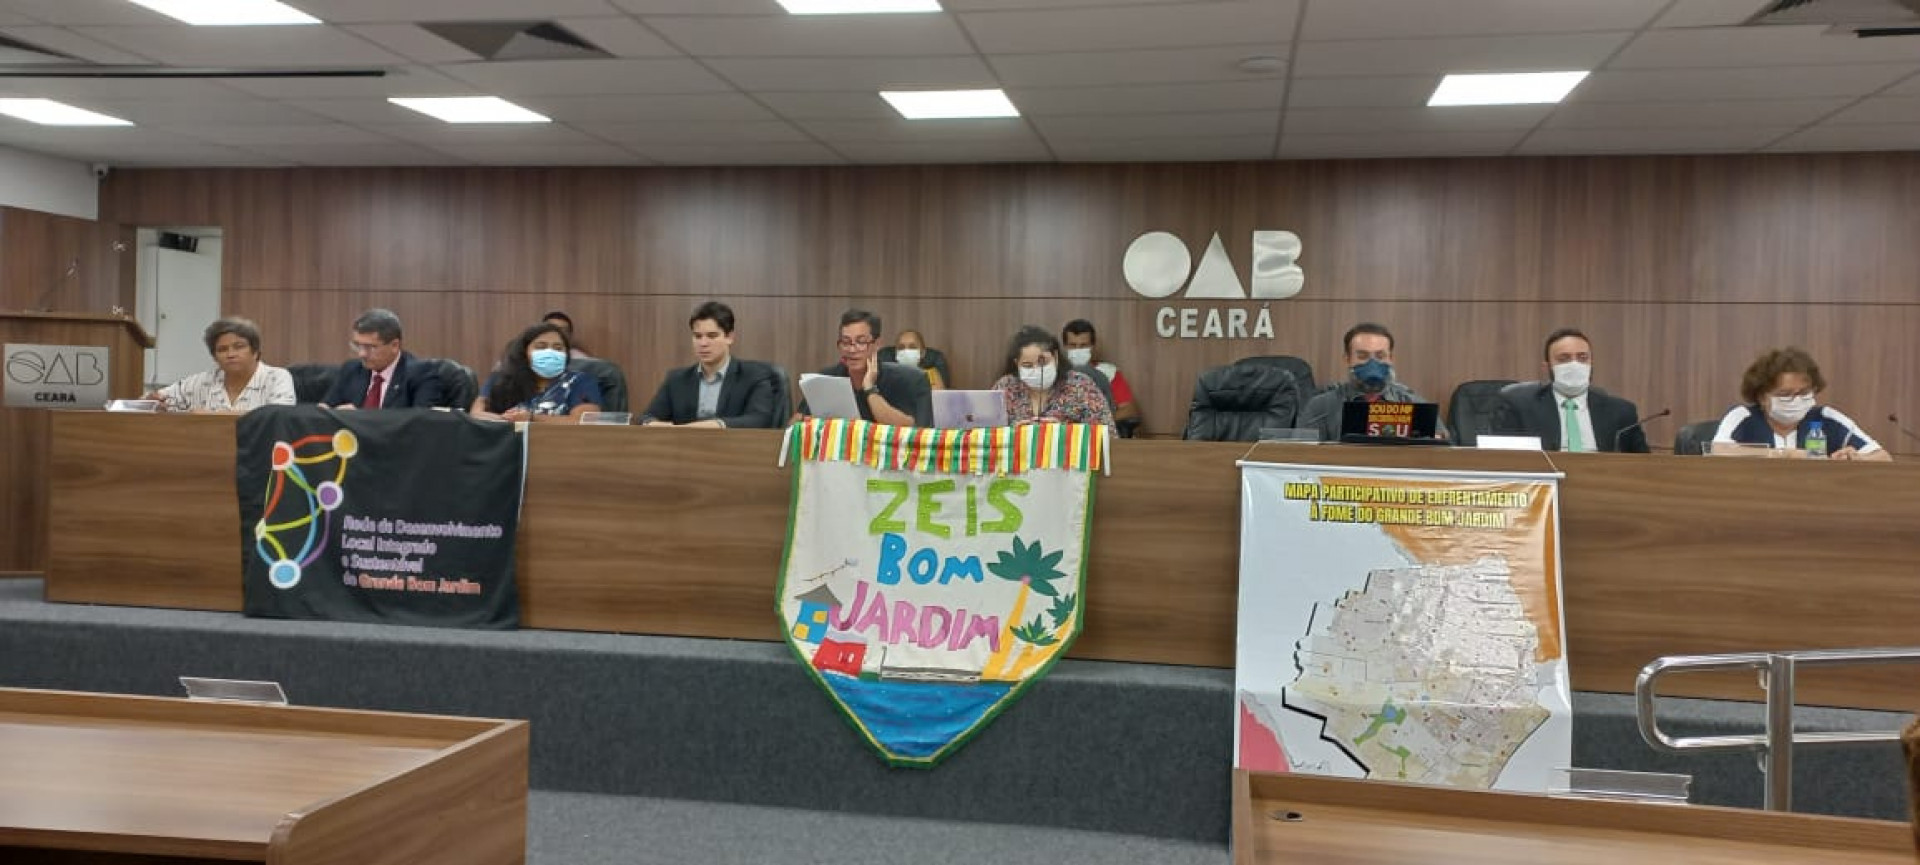 Audiência pública na OAB discute garantia do Direito Humano à alimentação, em Fortaleza